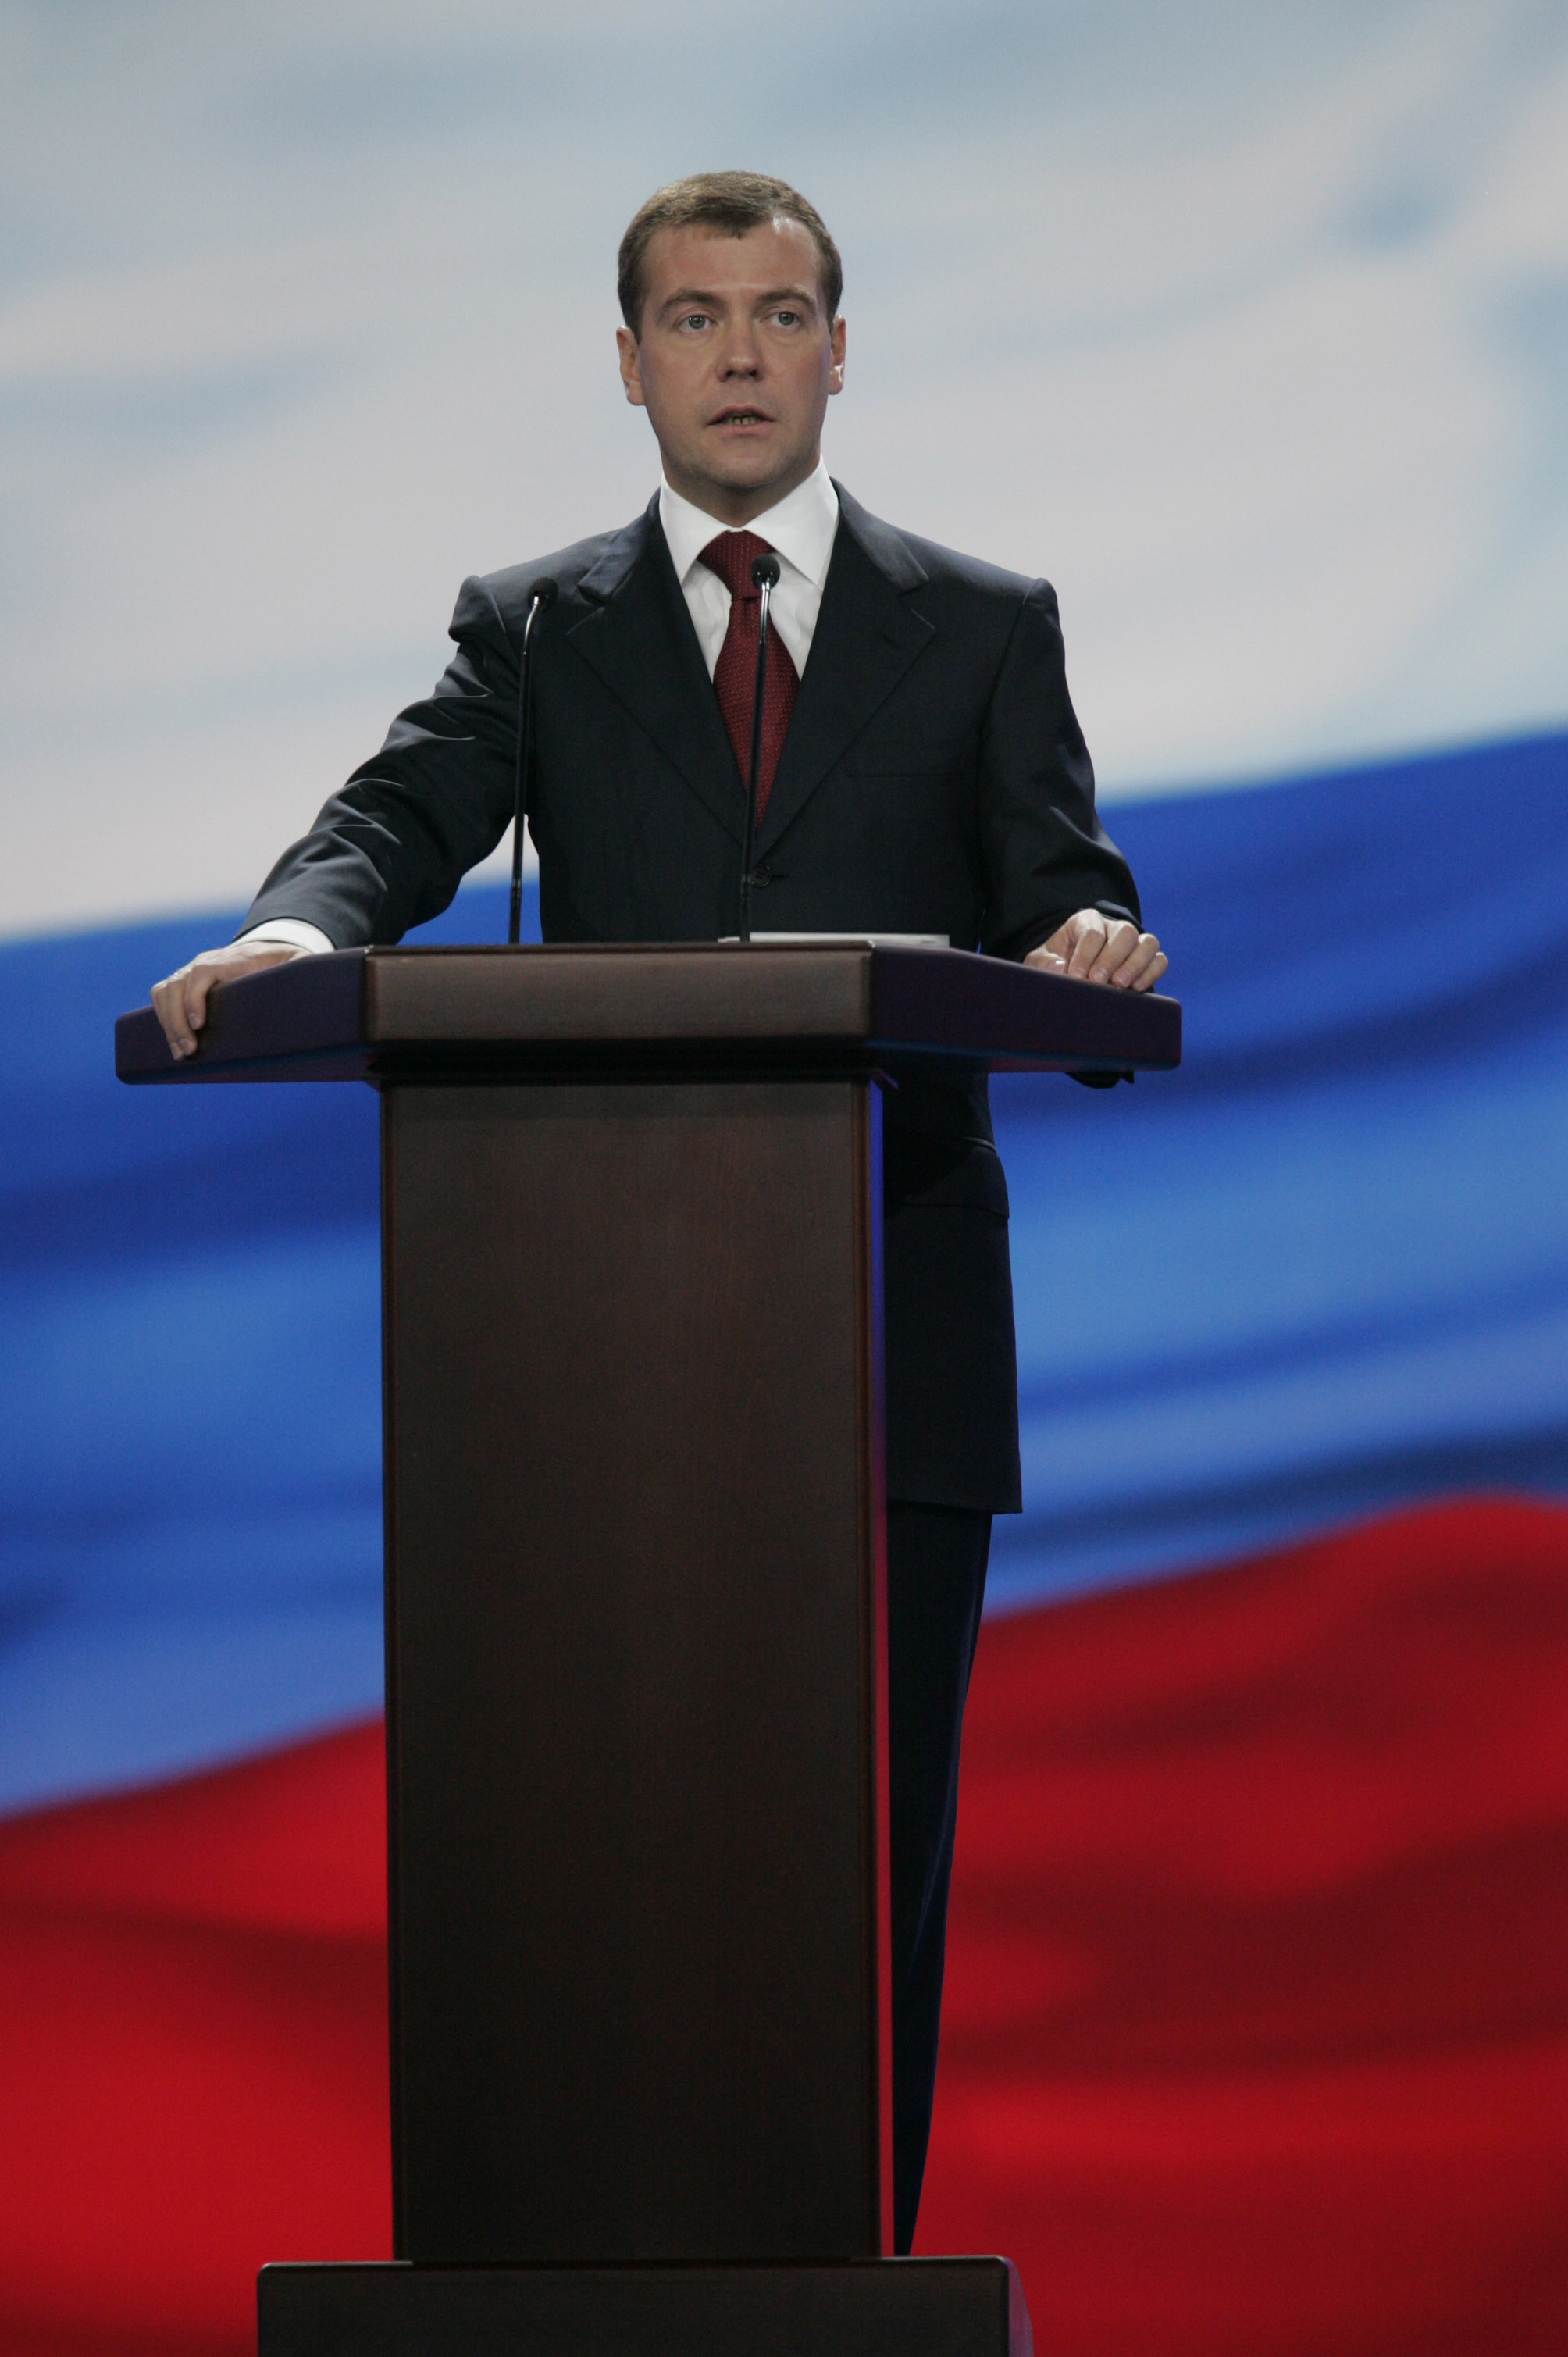 https://upload.wikimedia.org/wikipedia/commons/b/b8/Dmitry_Medvedev_official_large_photo_-2.jpg